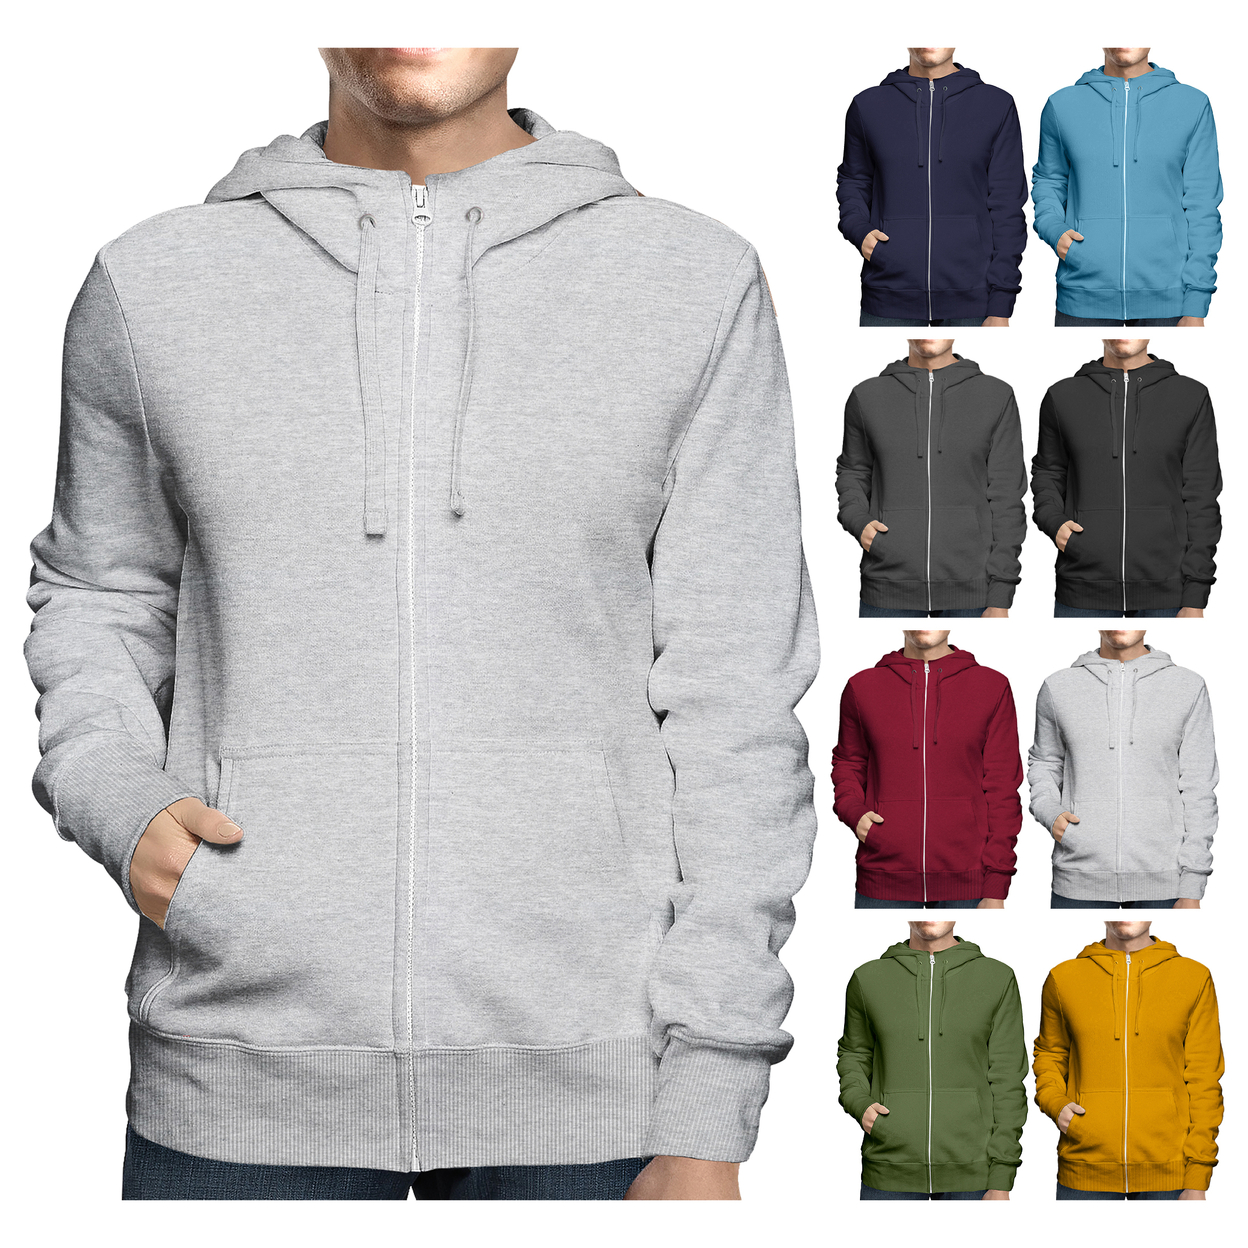 2-Pack: Men's Winter Warm Soft Full Zip-Up Fleece Lined Hoodie Sweatshirt - Black & Grey, Medium